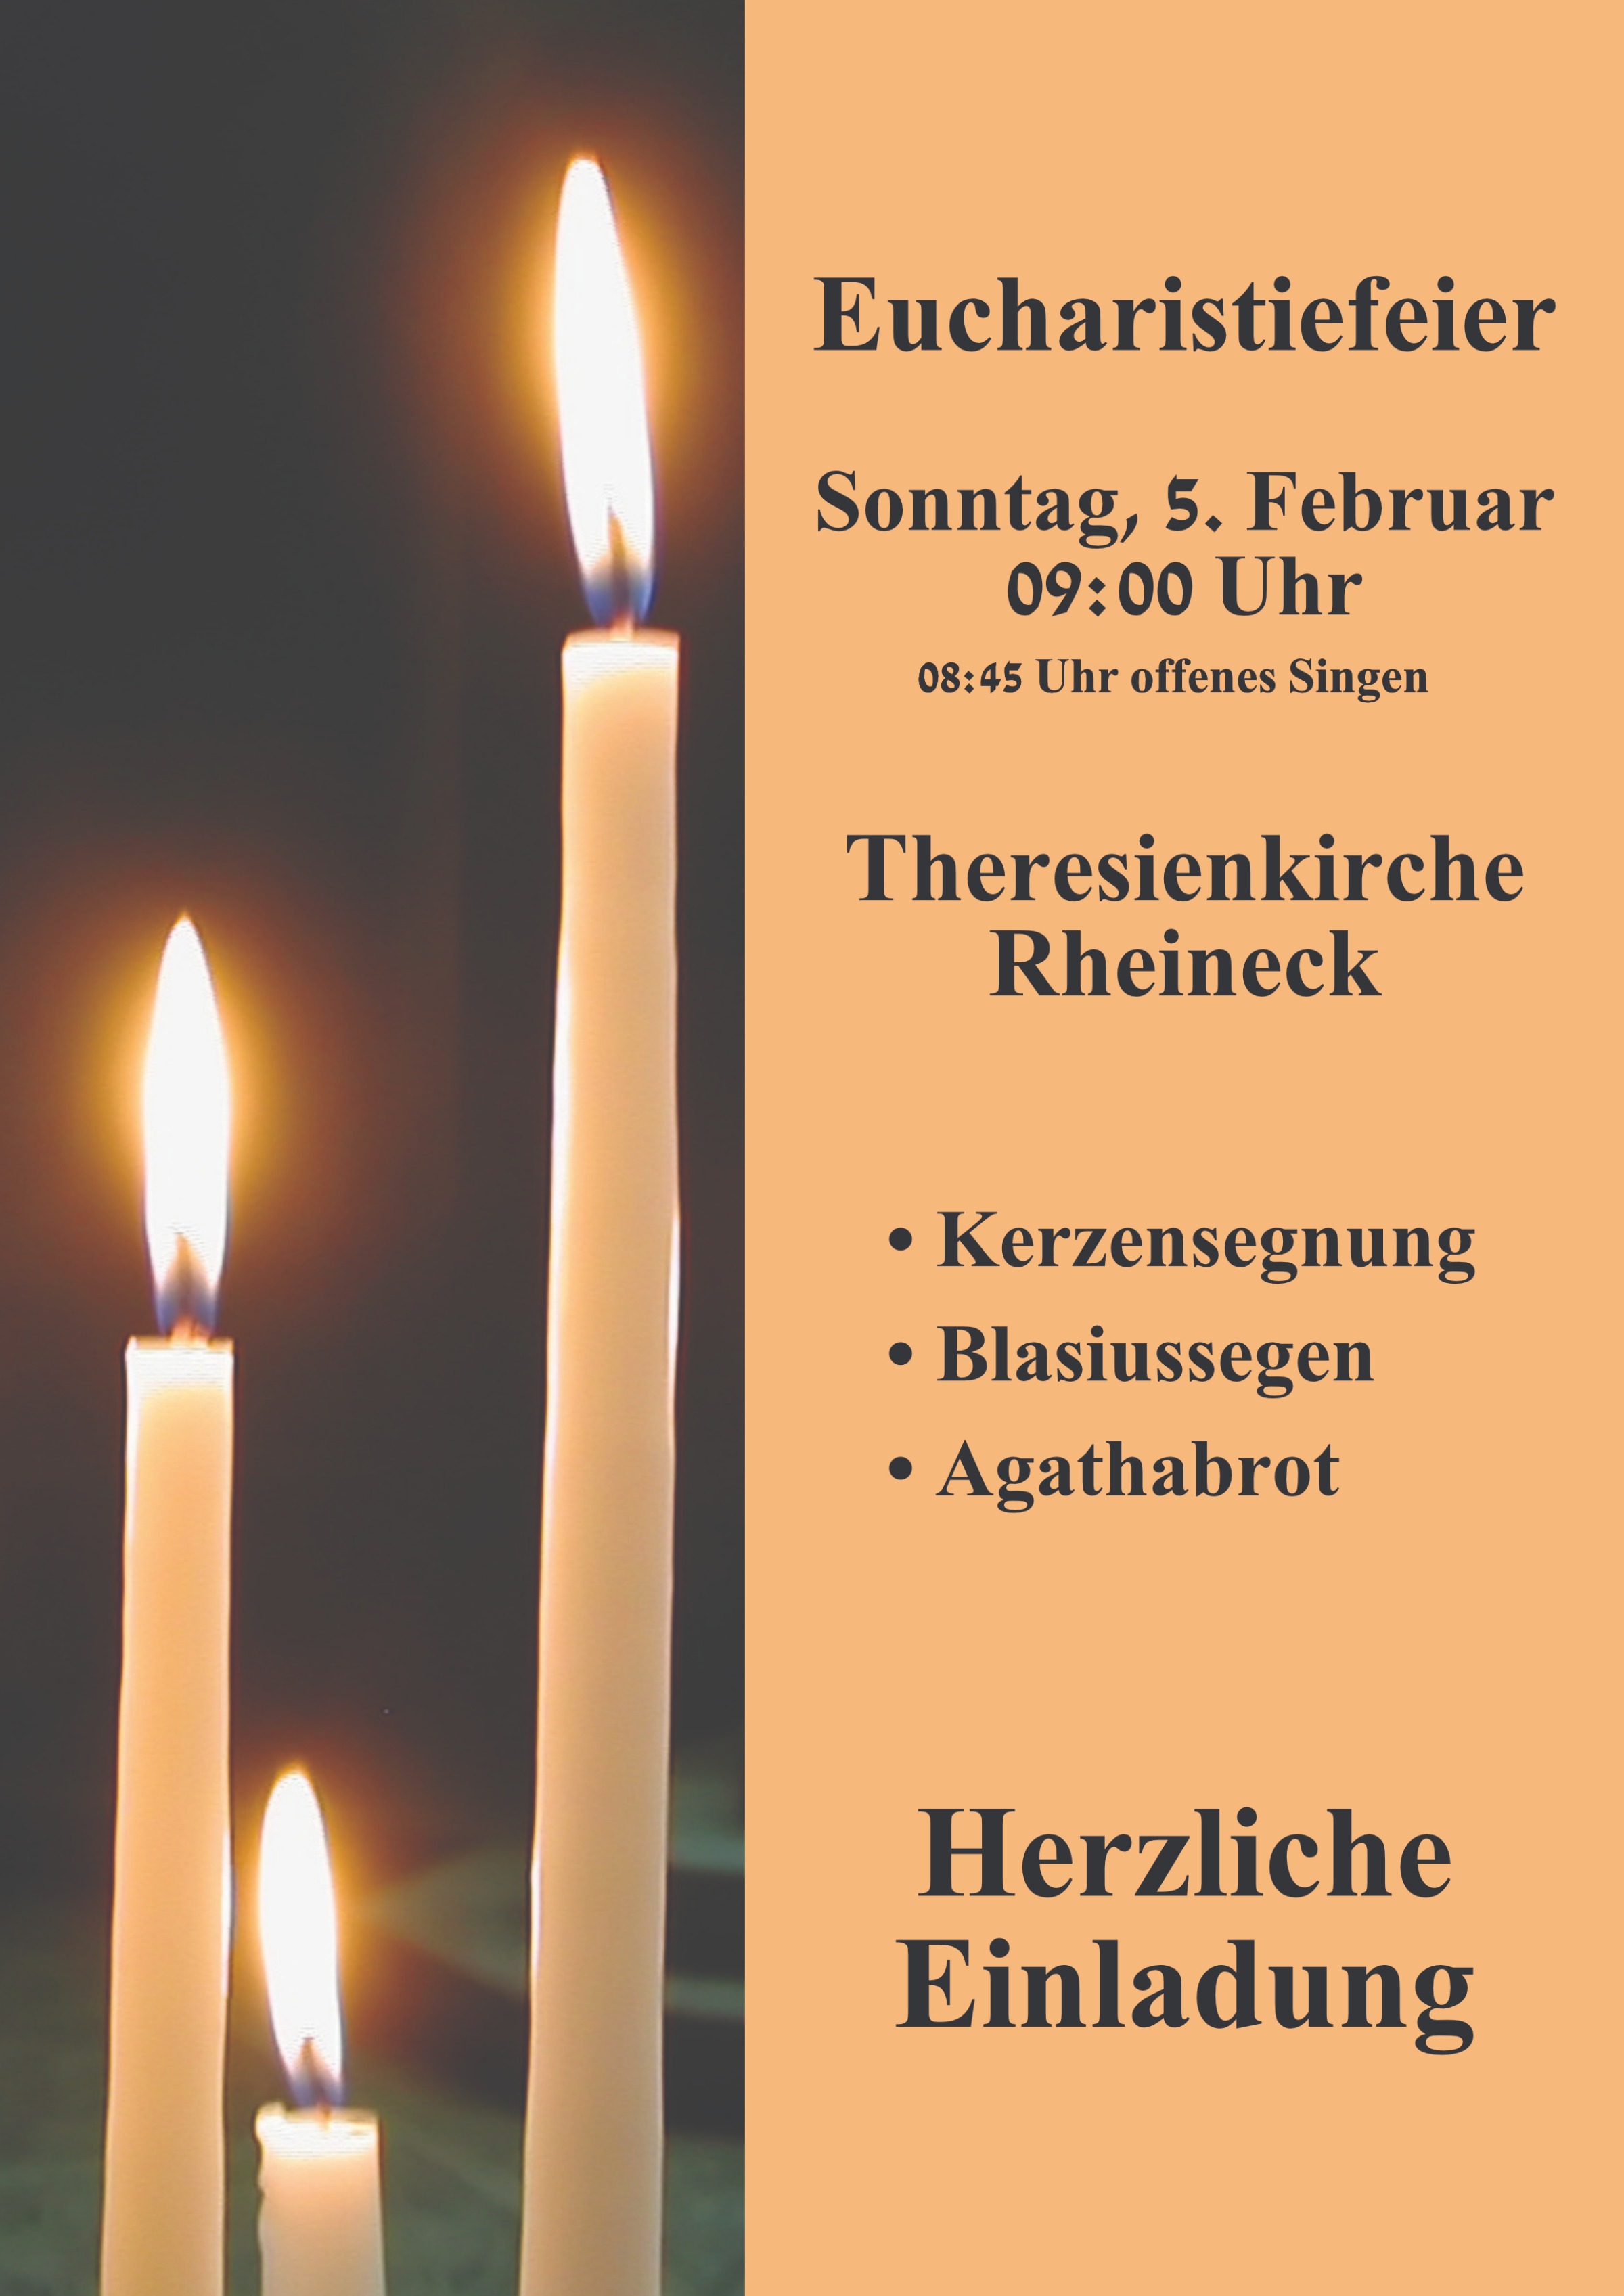 Kerzen- und Agathabrotsegnung, Blasiussegen